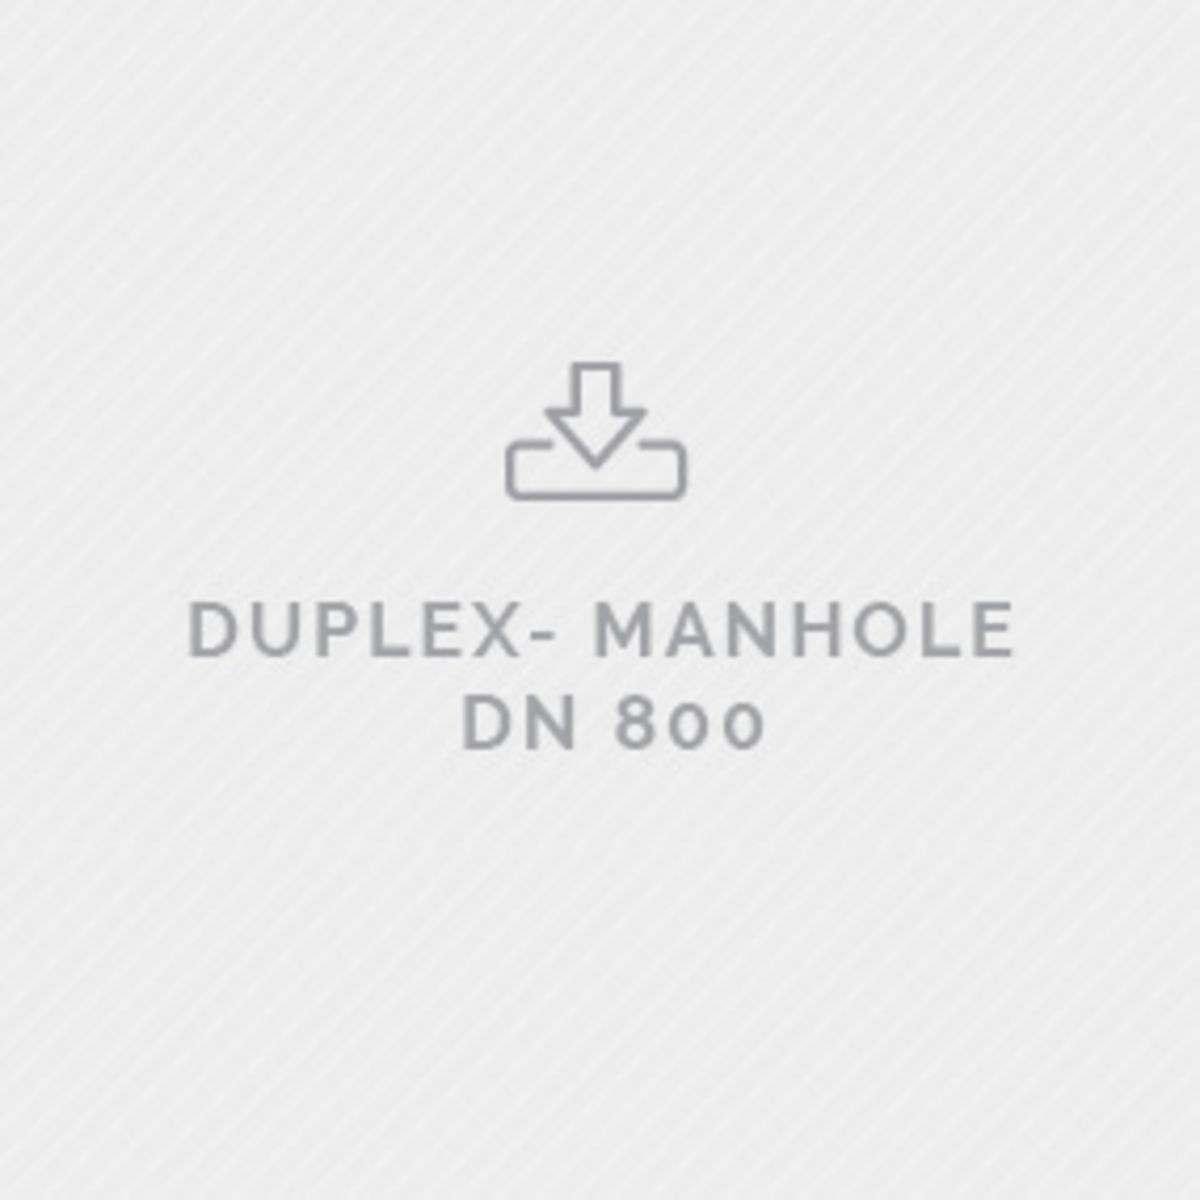 Predl Specifiazione Duplex DN800